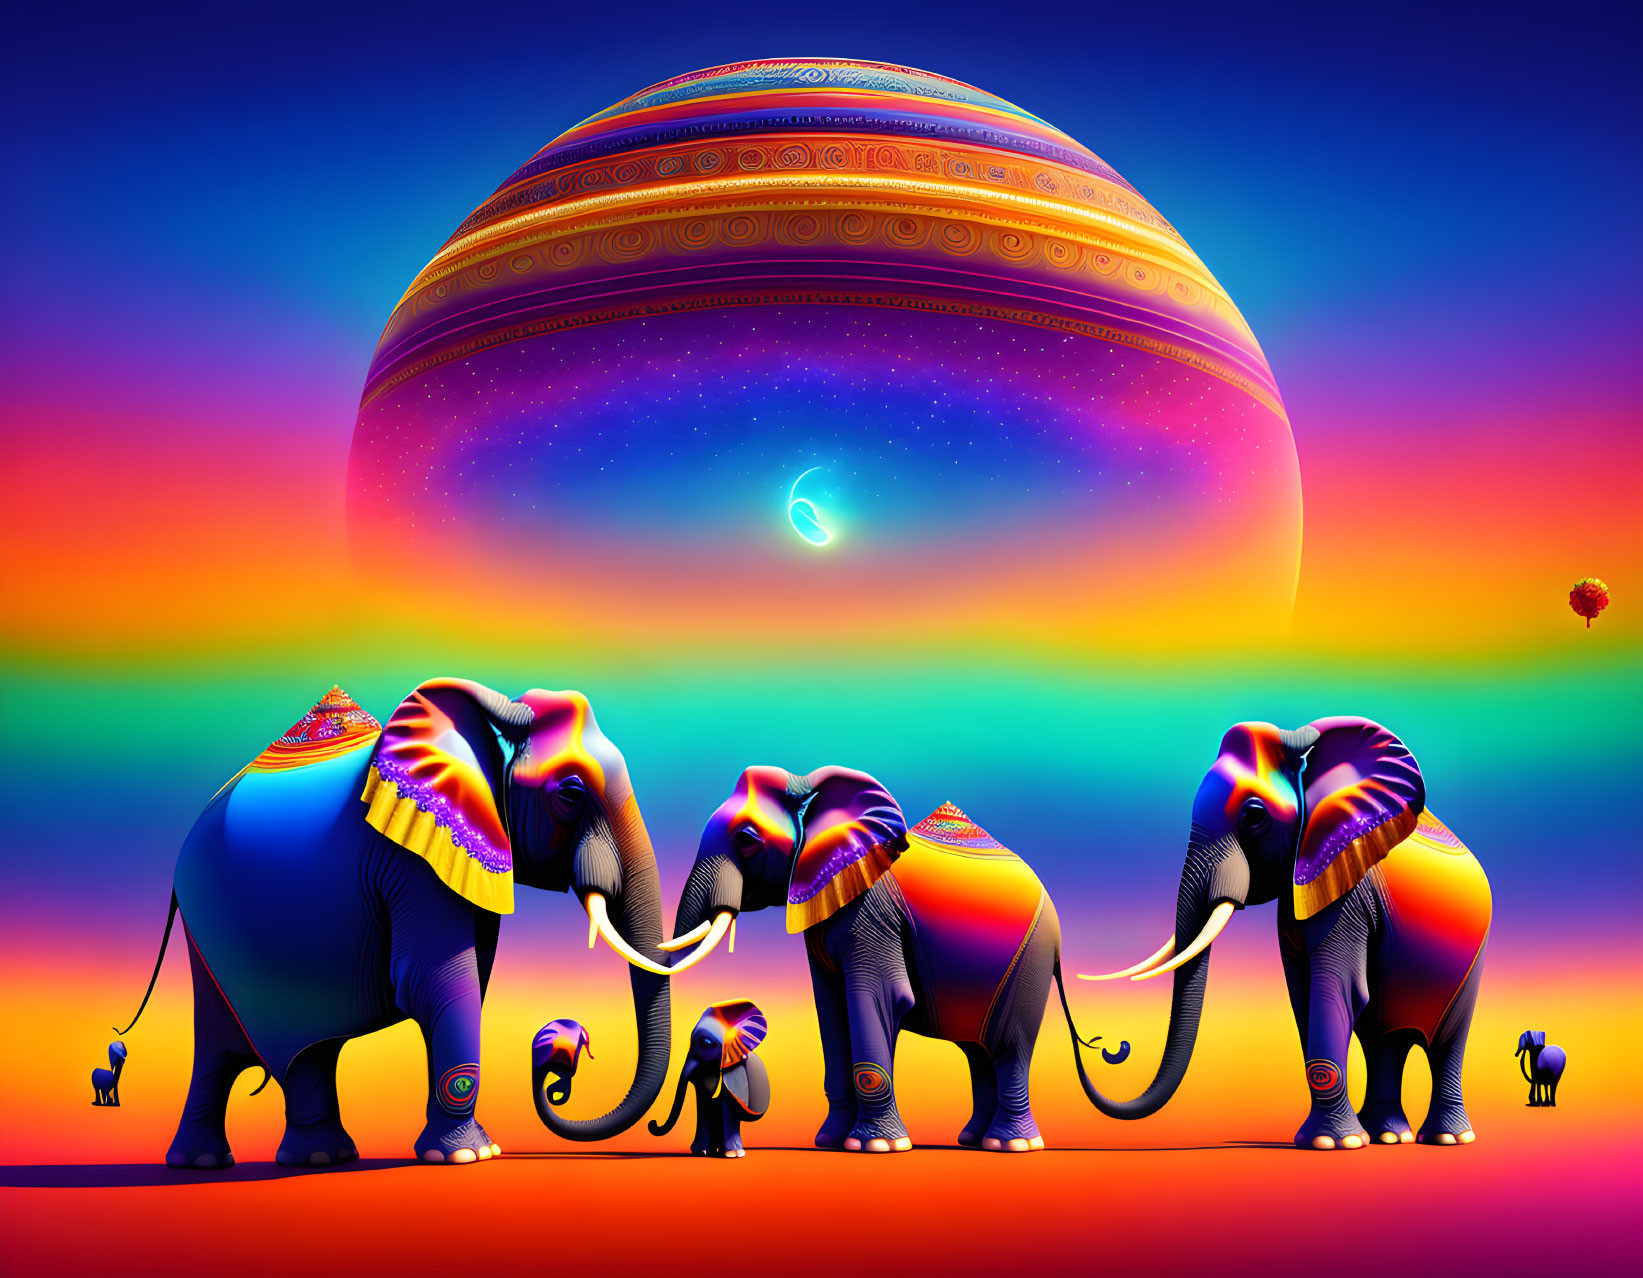 Psychedelic elephants 